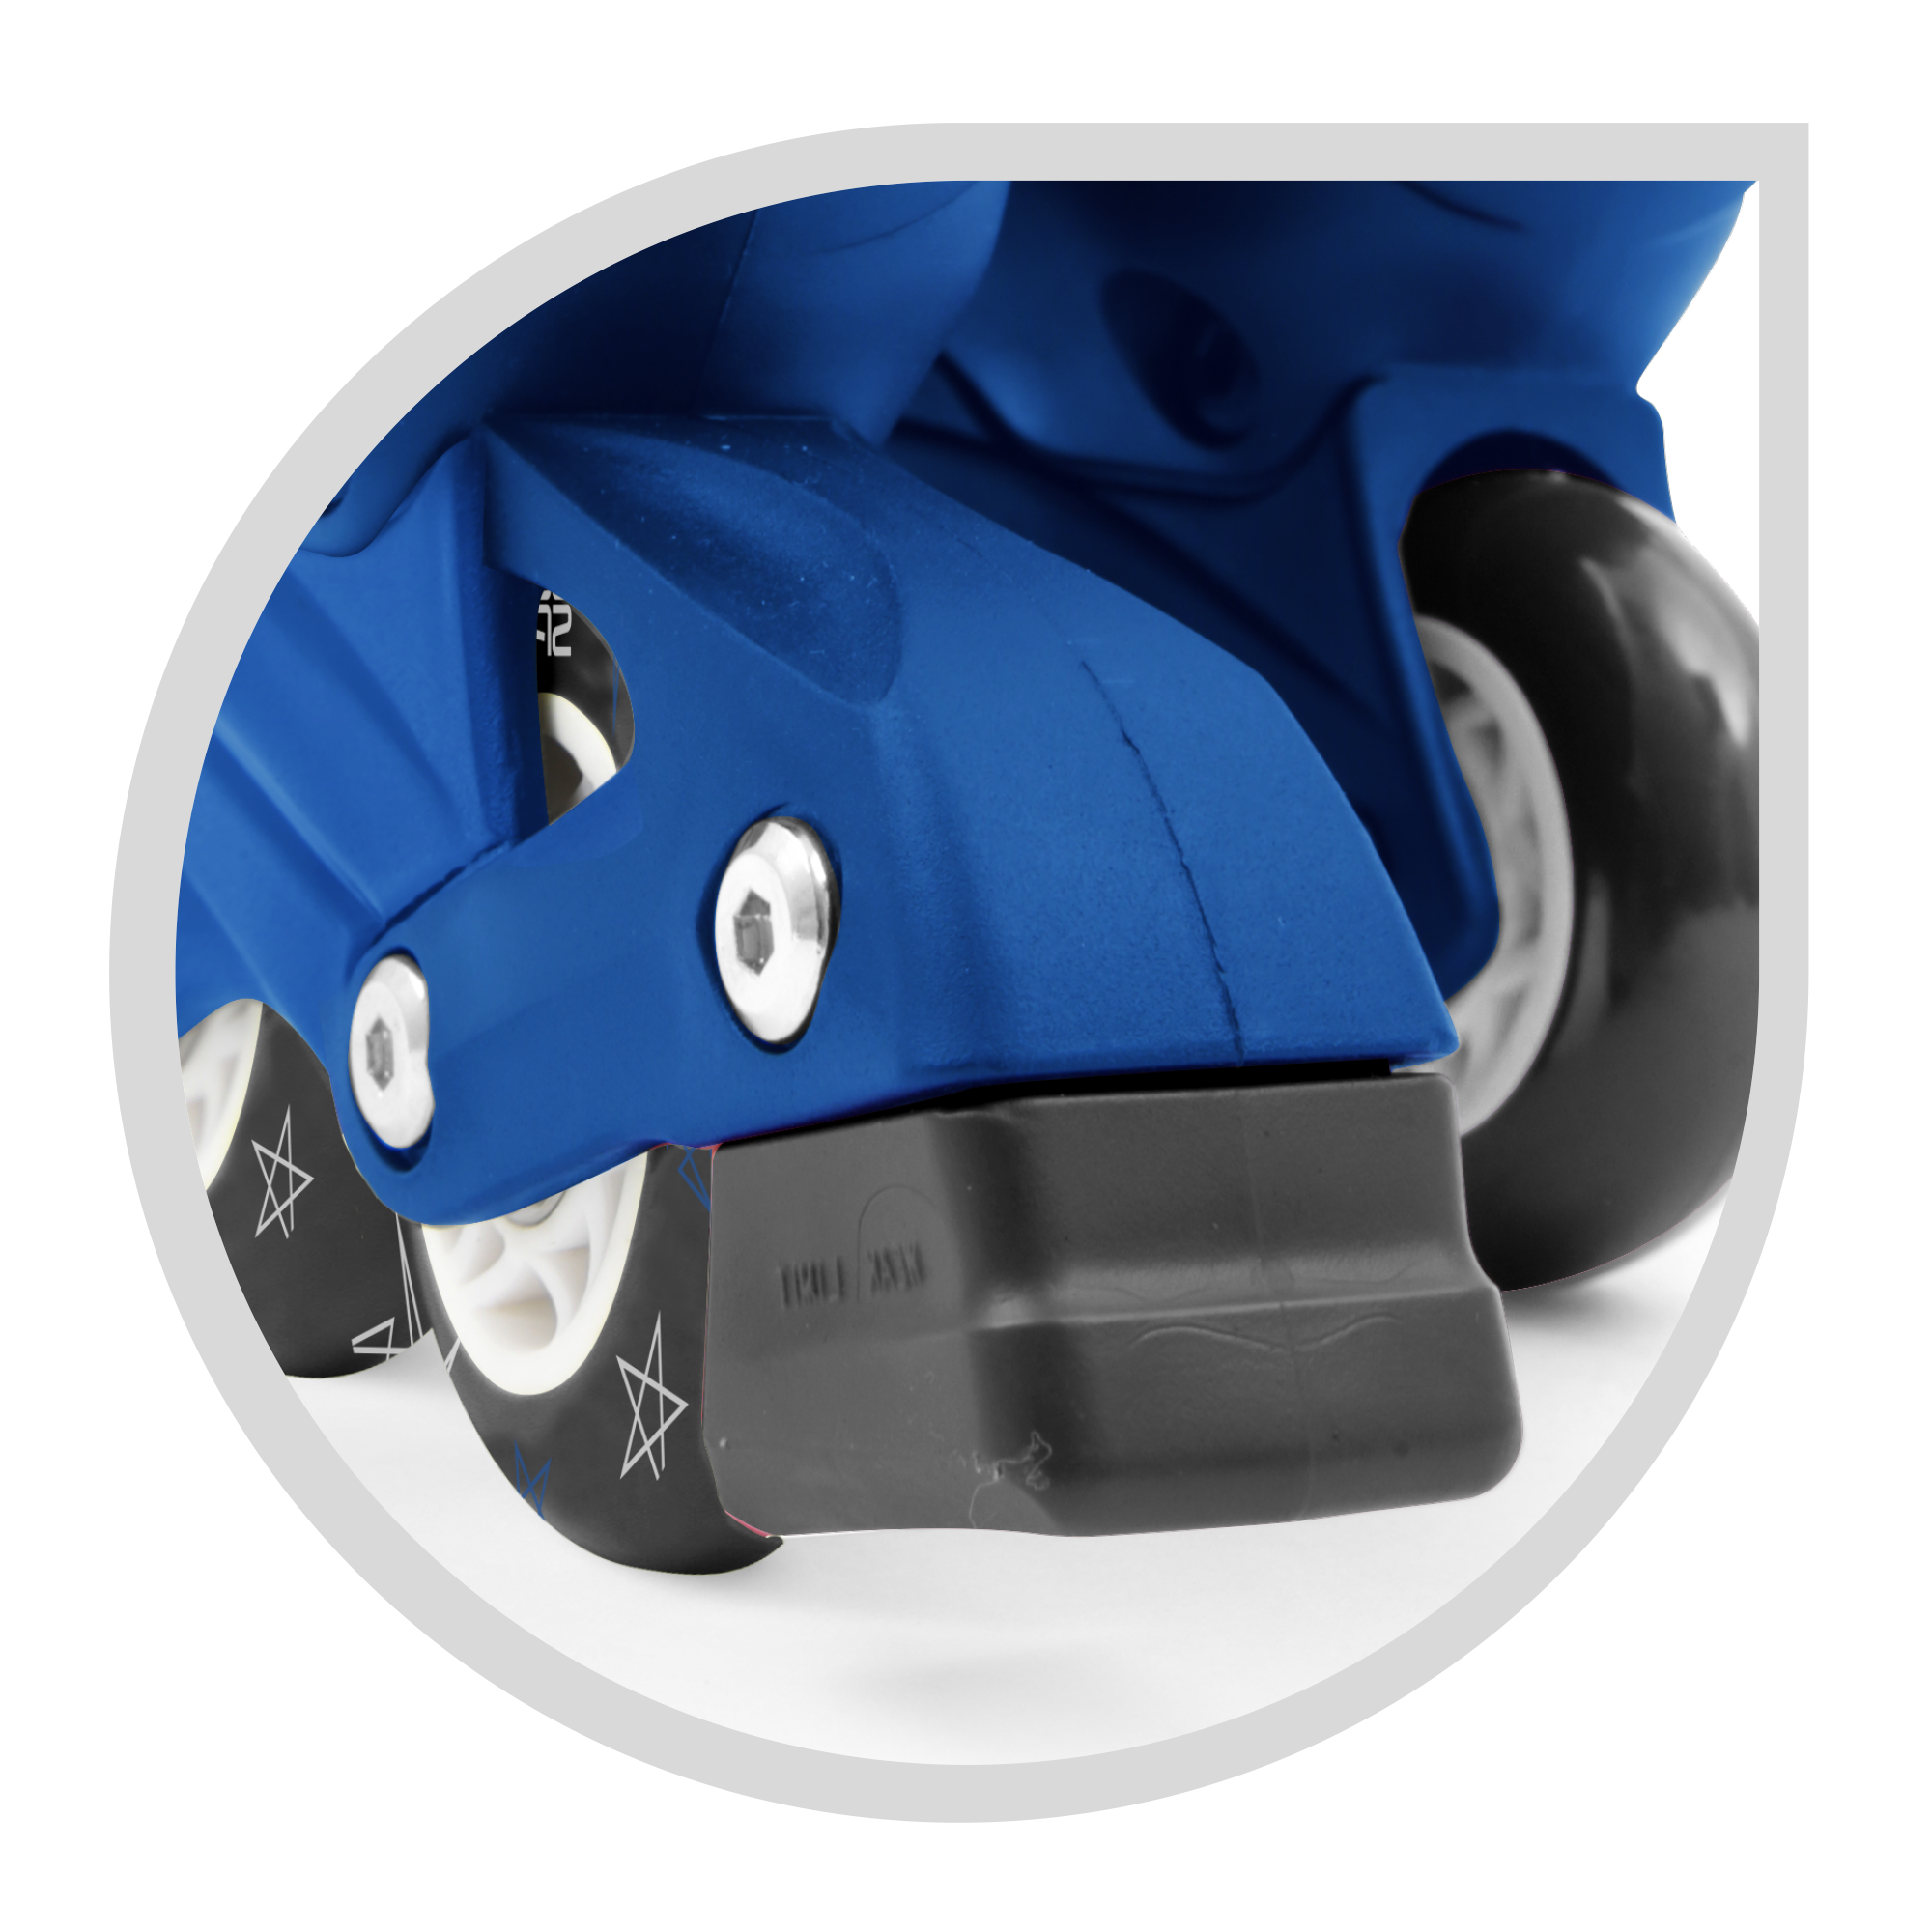 Pattini a 4 ruote con taglia regolabile e sistema frenante per bambini - misura 31-35, fibbie regolabili e imbottitura dello stivale - disponibile in blu e rosa - SUN&SPORT